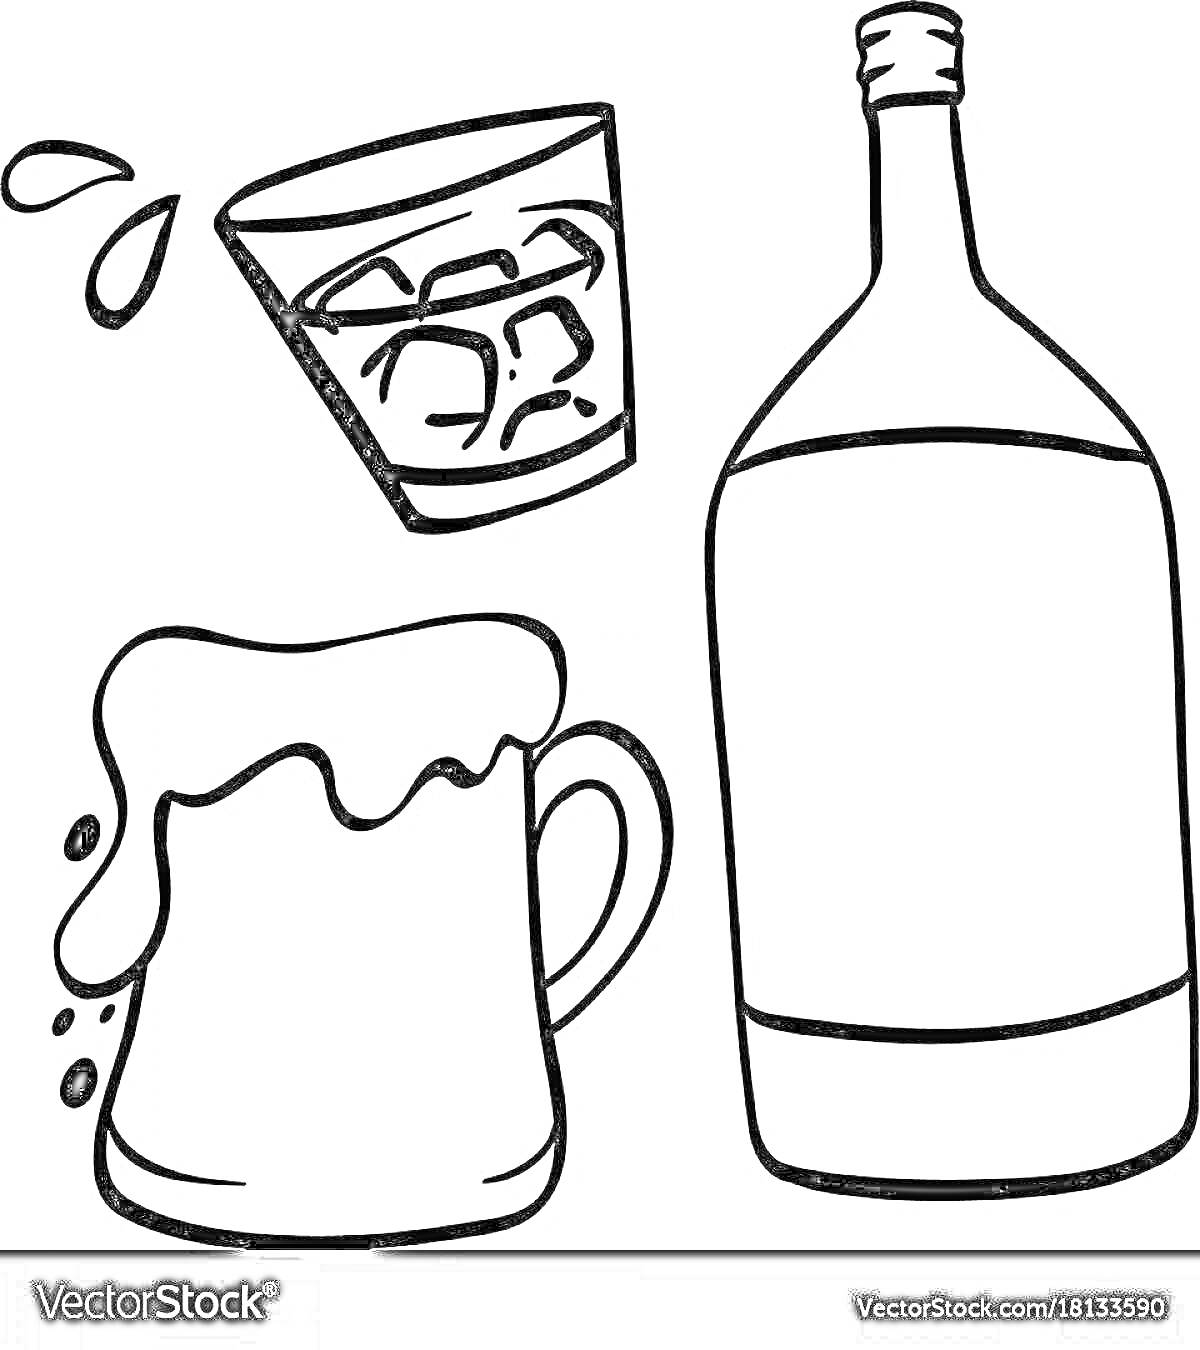 Раскраска Бокал с кубиками льда, бутылка, кружка с пенным напитком